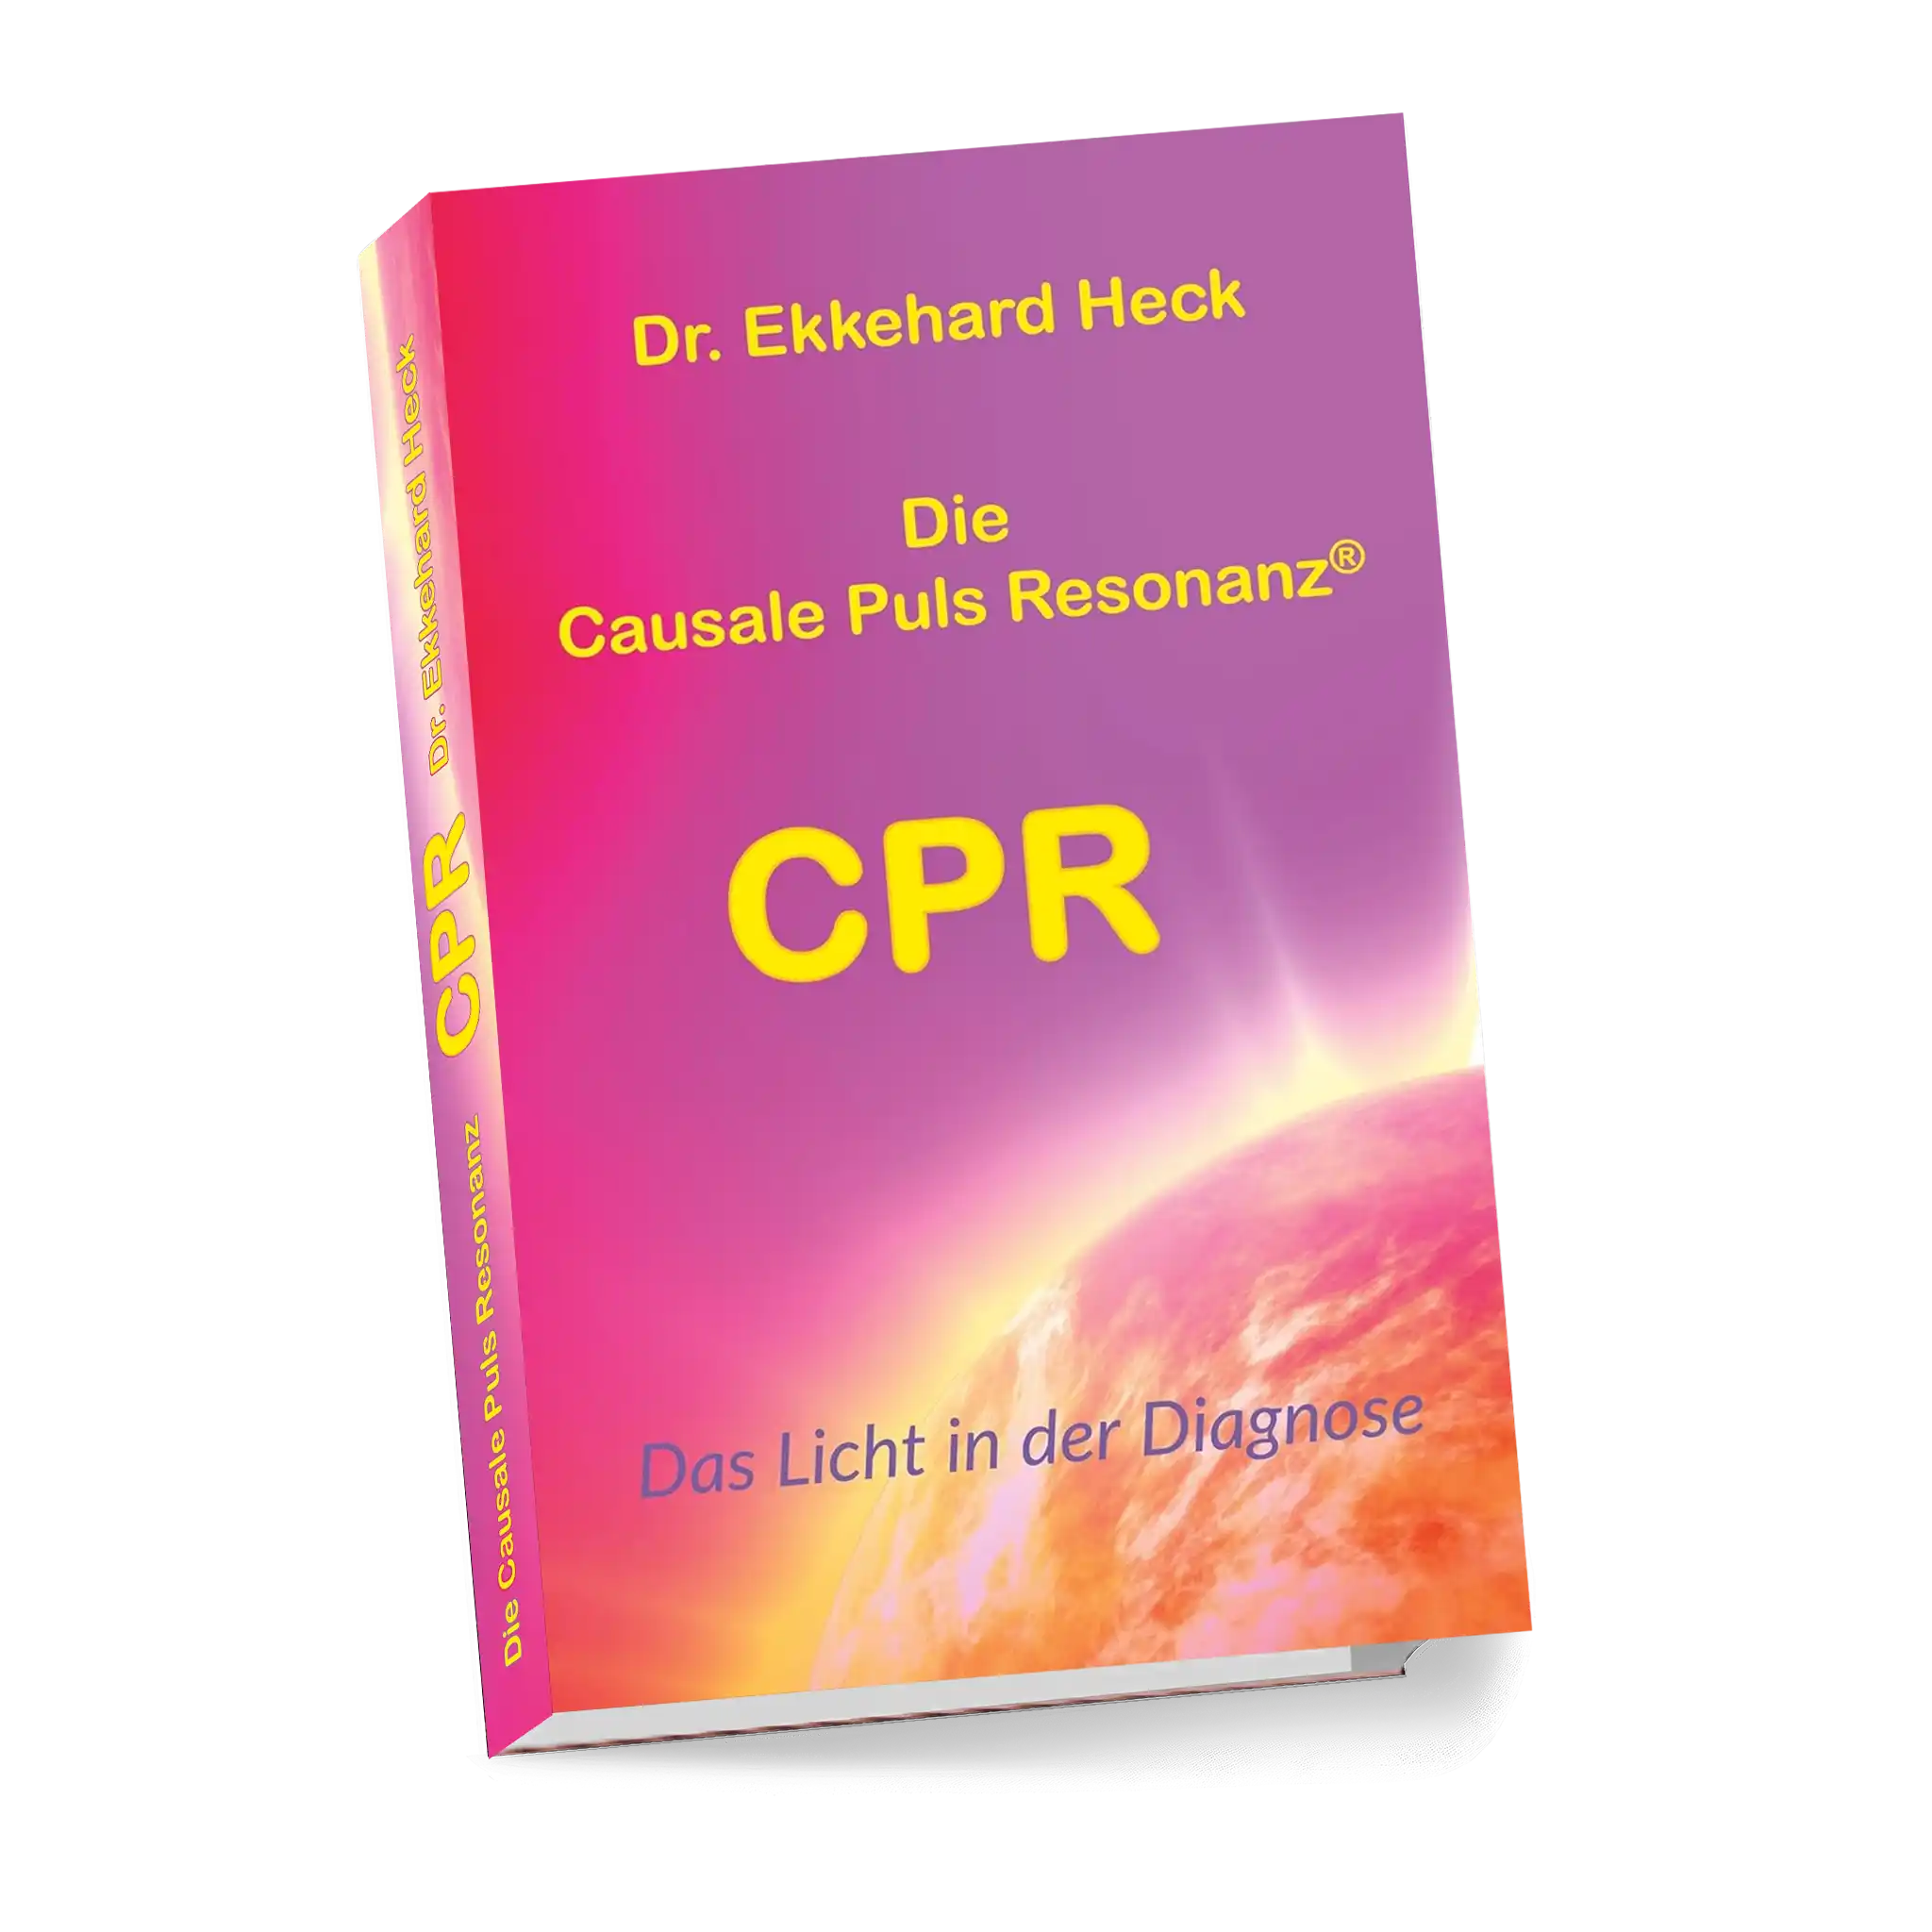 Die Causale Puls Resonanz® CPR: Das Licht in der Diagnose